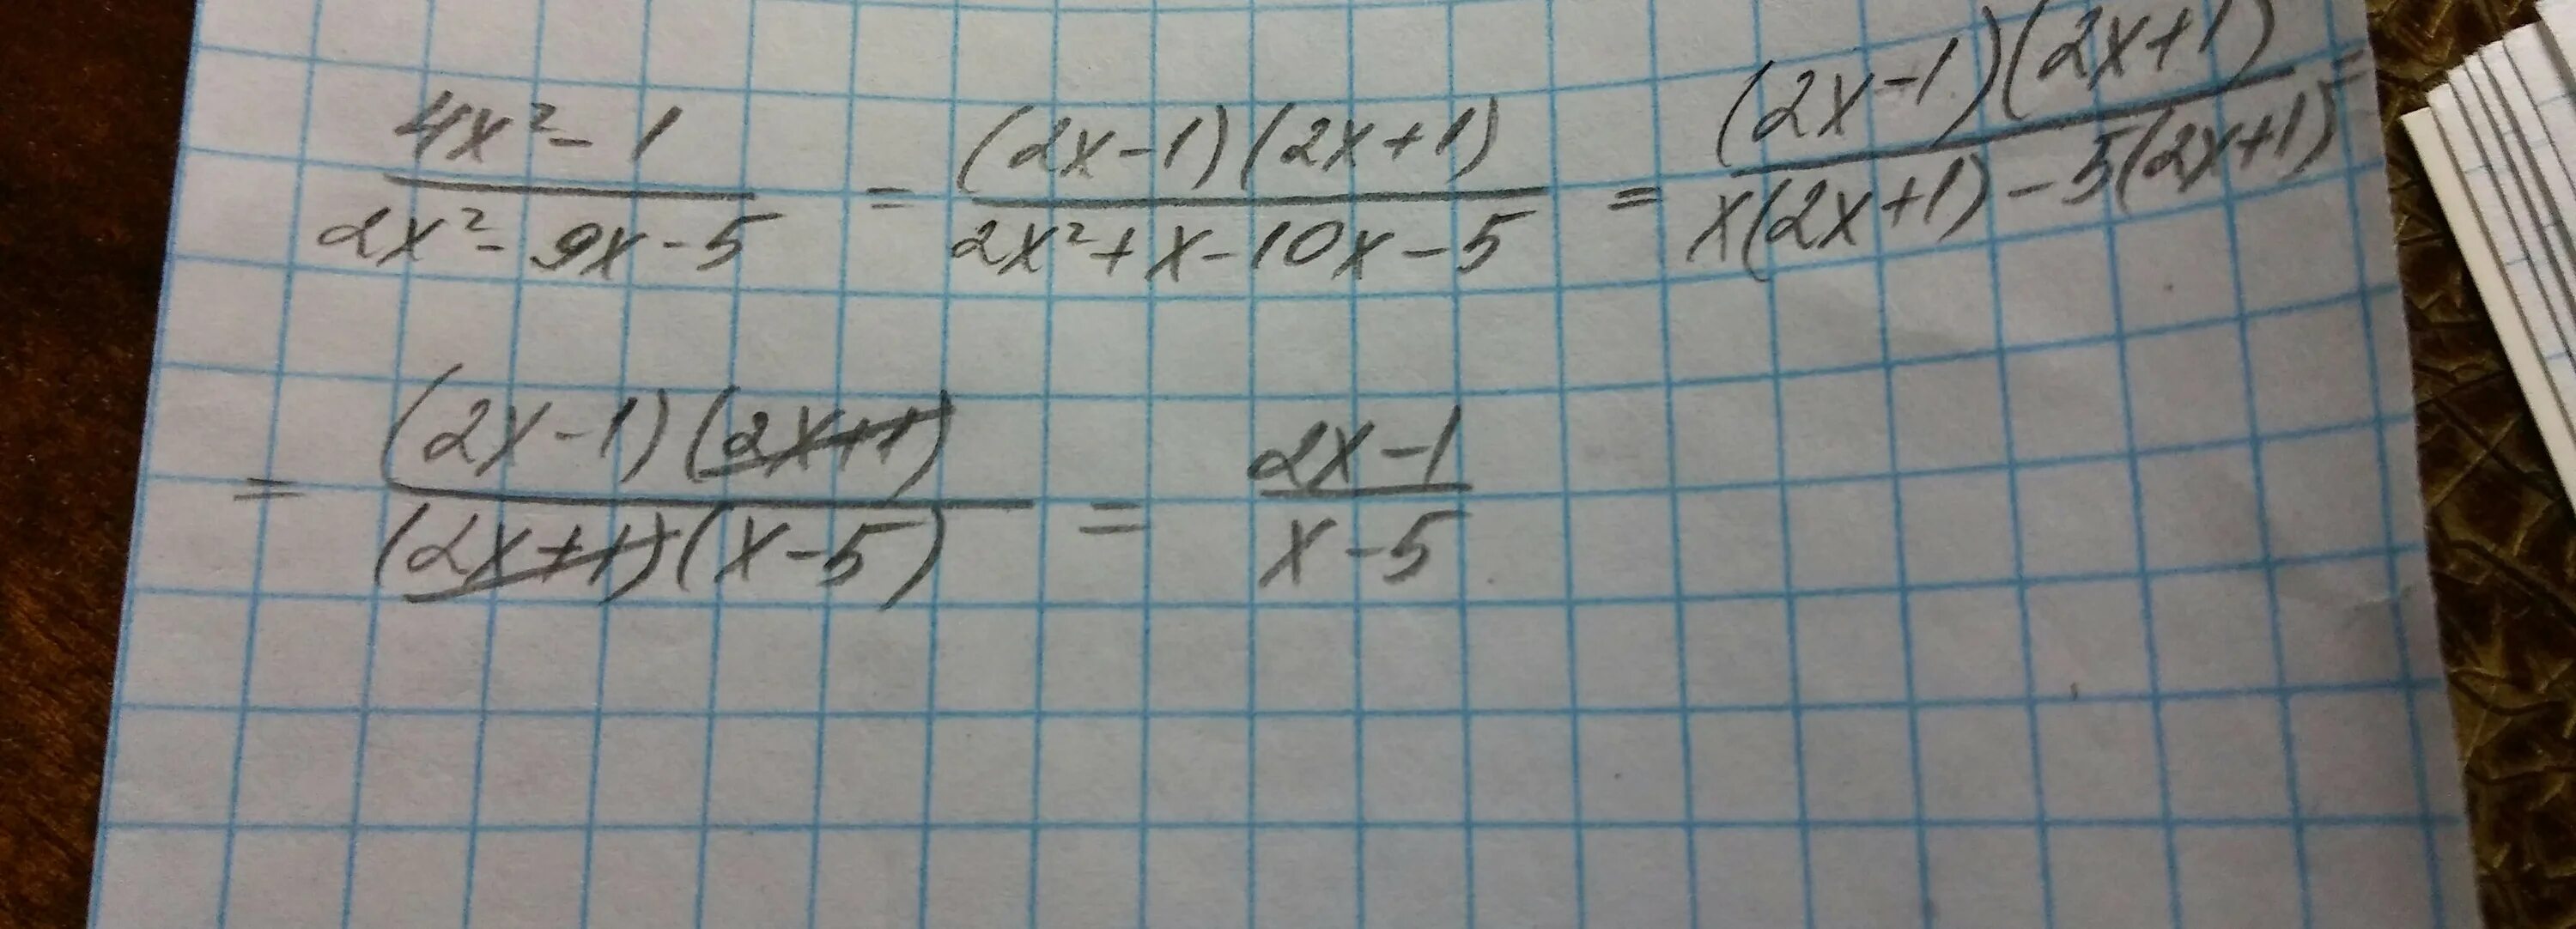 Сократите дробь 4x^2-1:2x^2-5x+2=. Сократите дробь x(а+4)/у(а+4). (X+X^1/2) /2x сократить дробь. Сократите дробь x −15 ⋅5x 8 (2x) 2 ⋅x −9.